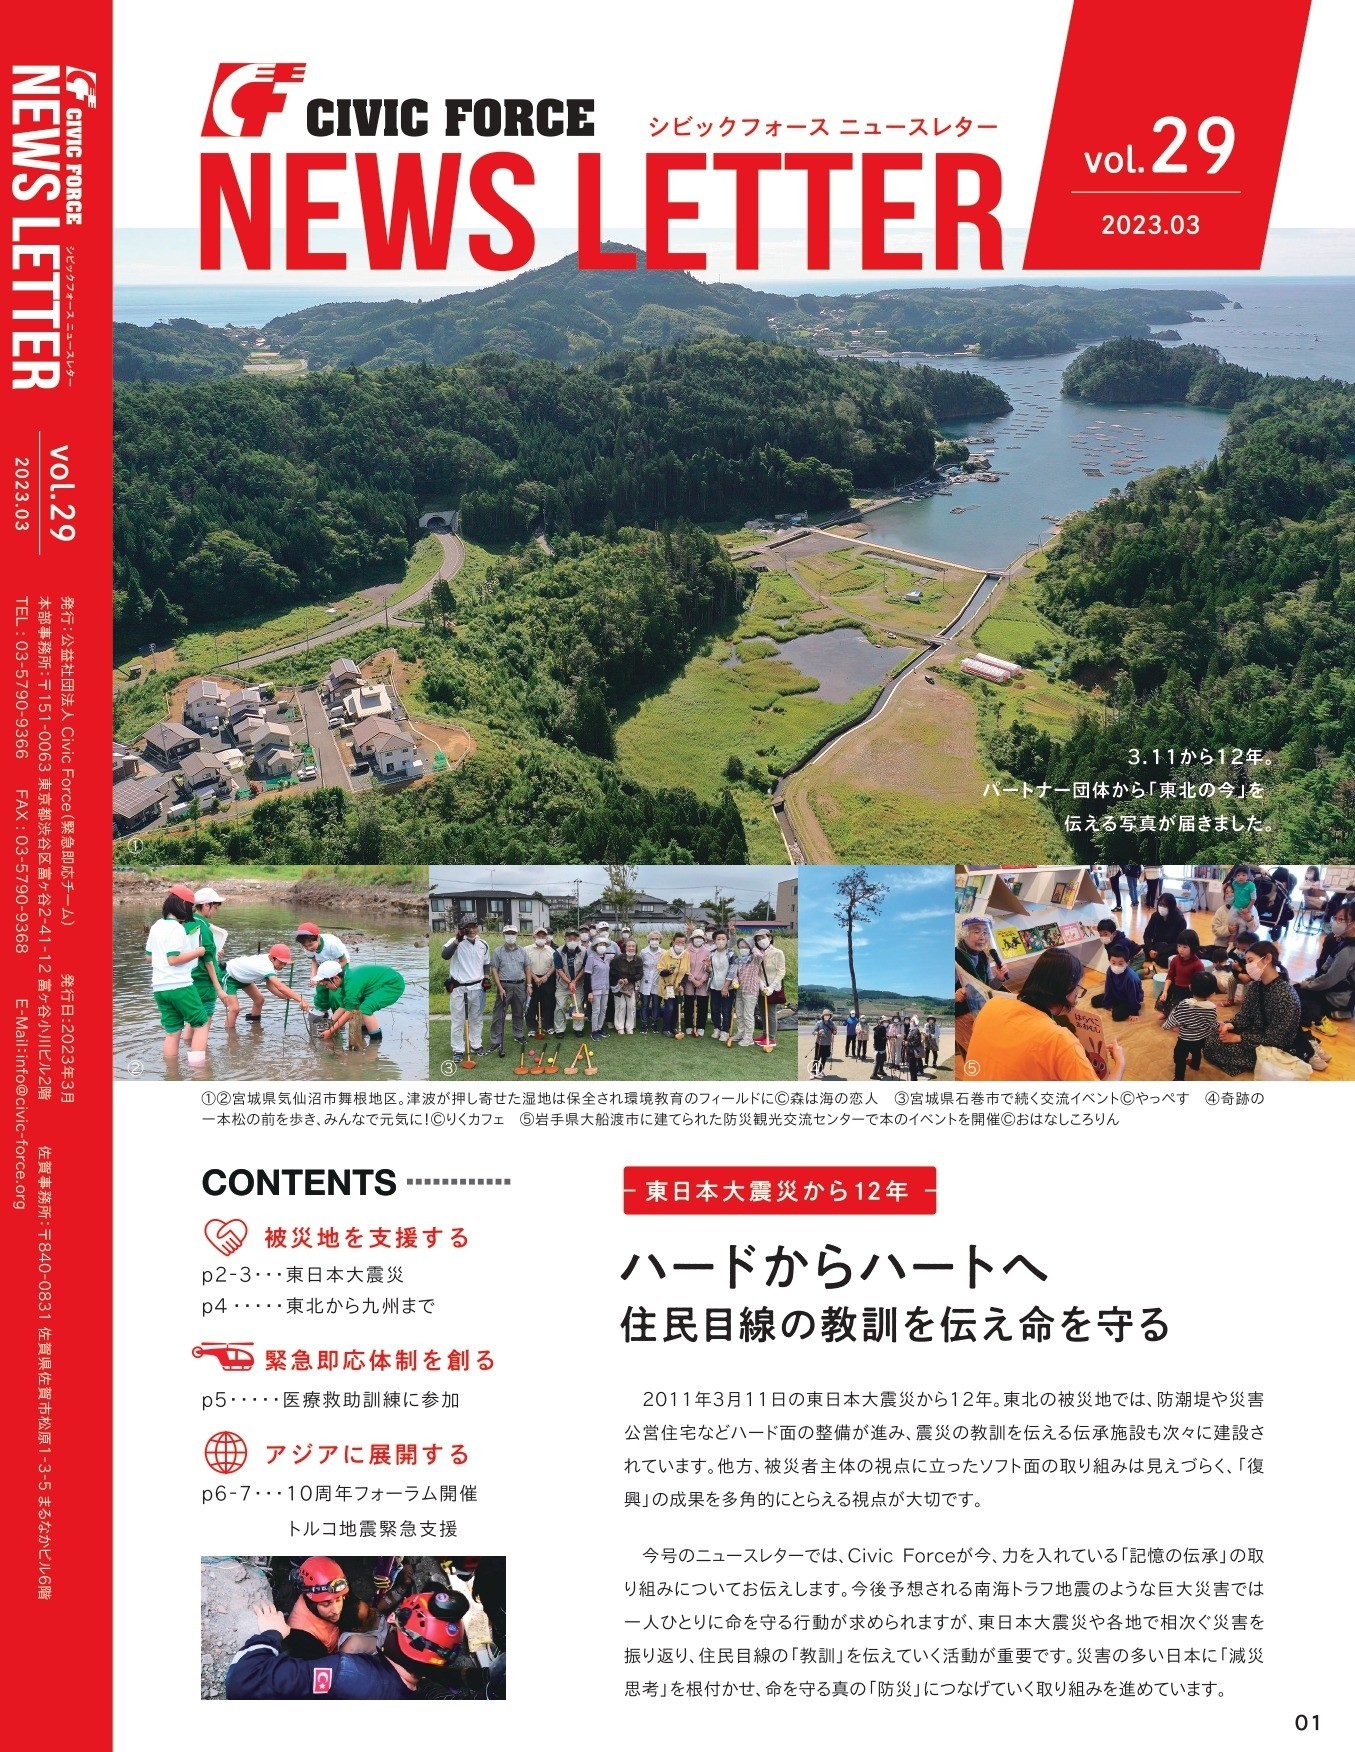 ニュースレターVol.29 発行　ー東日本大震災から12年